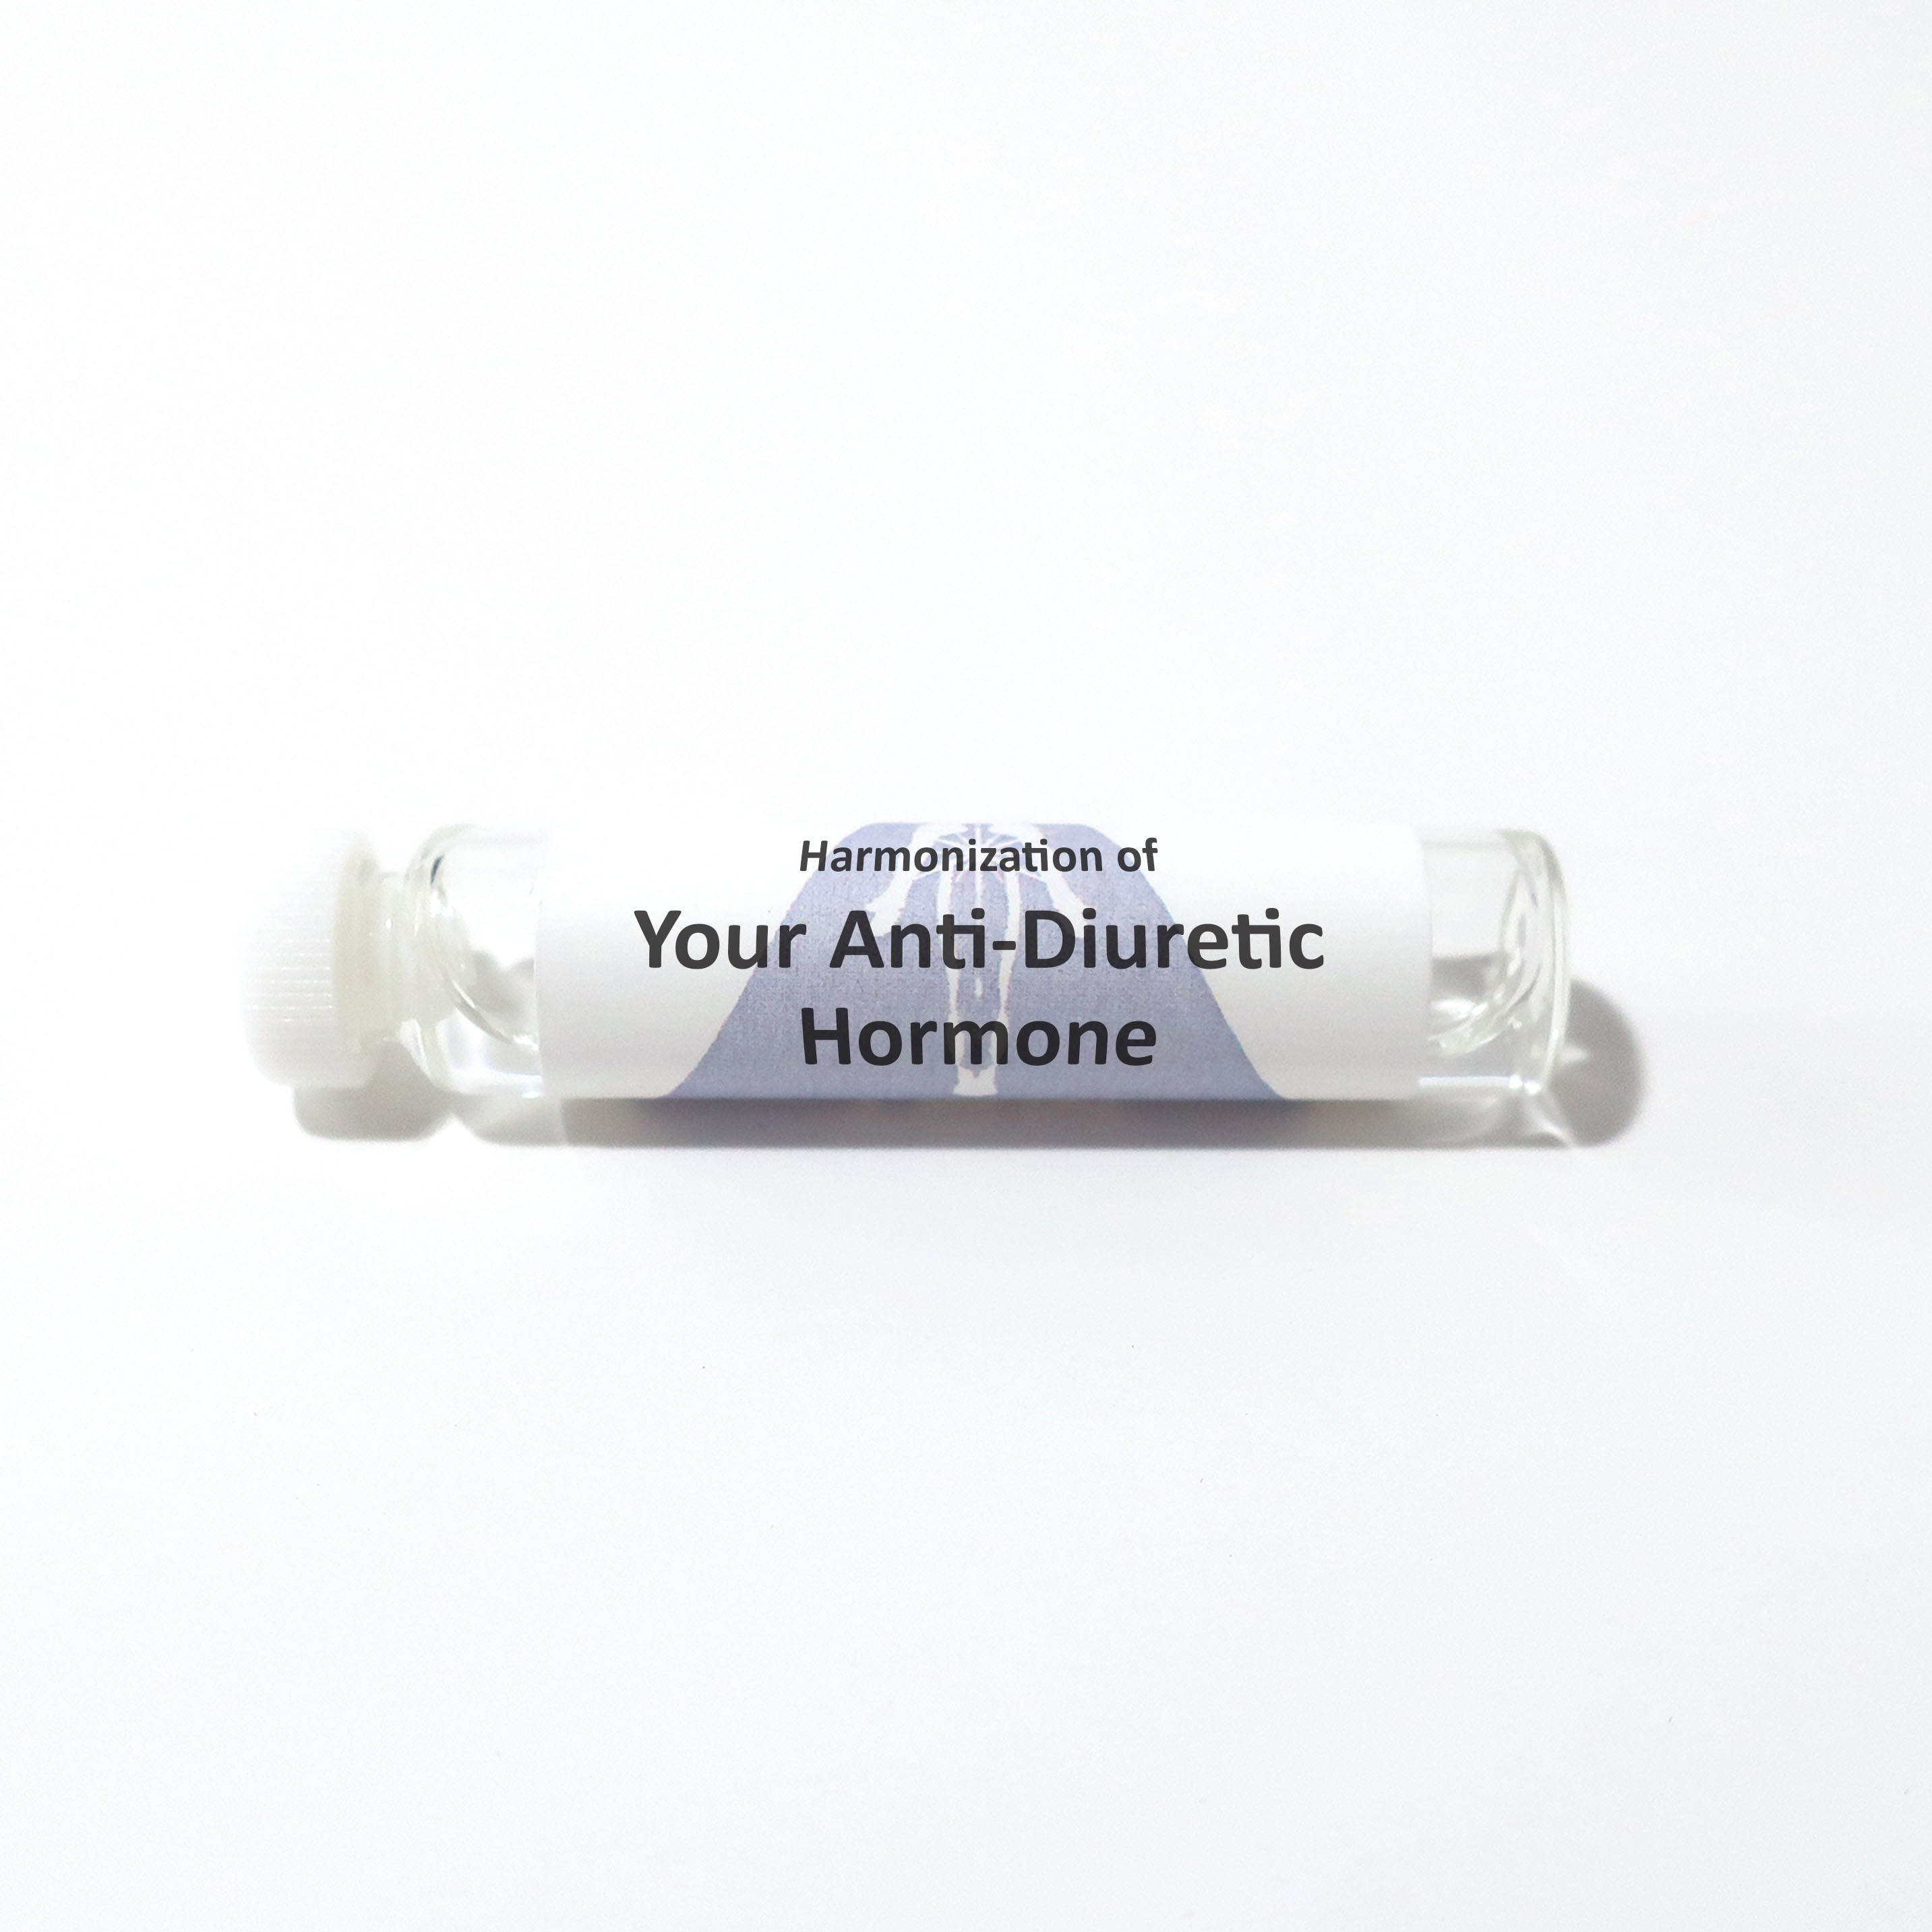 Your Anti-Diuretic Hormone (ADH)